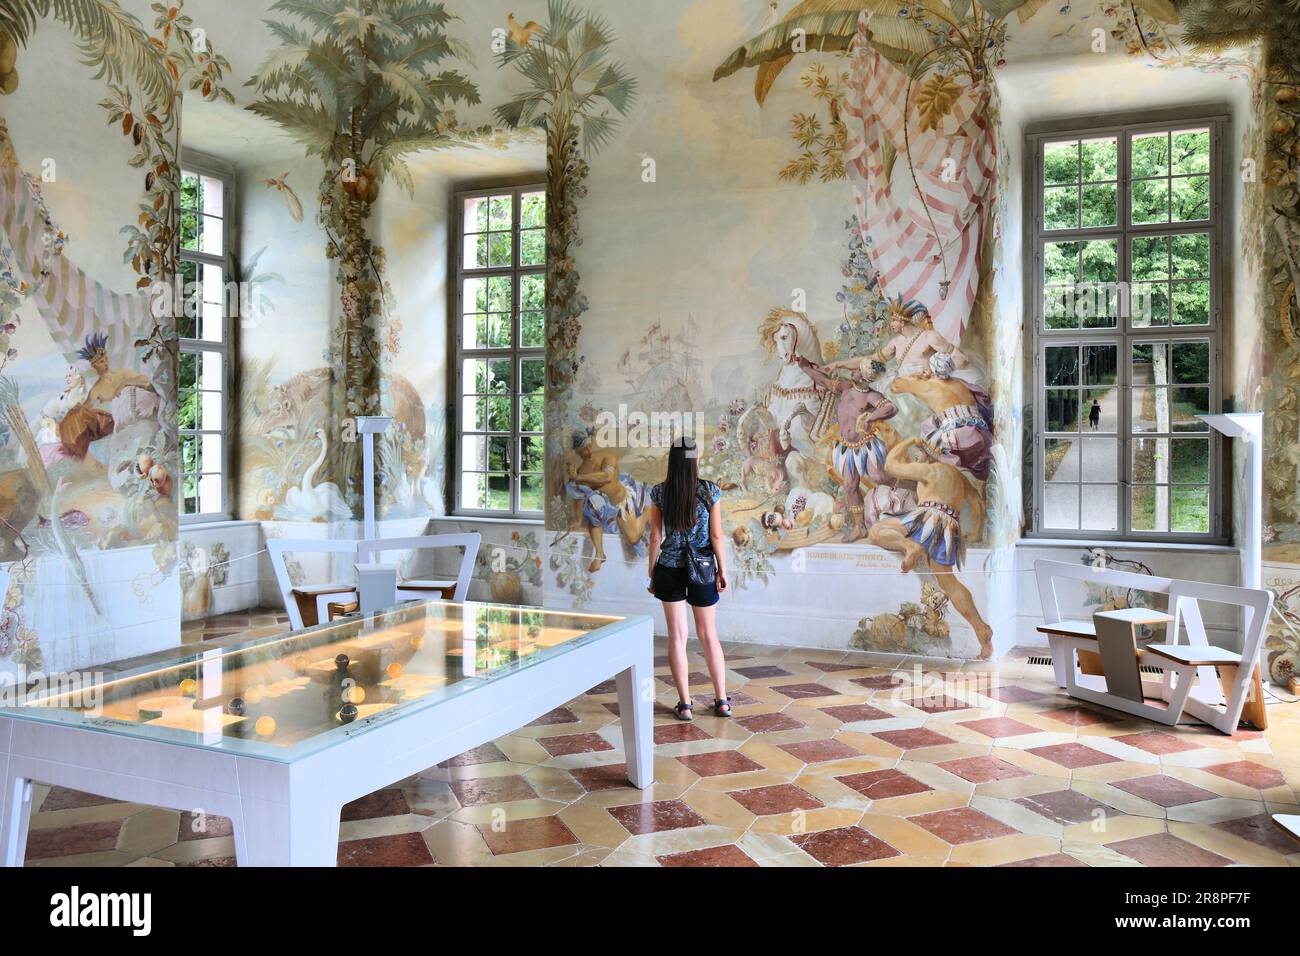 MELK, AUSTRIA - 1 AGOSTO 2022: Visite turistiche al padiglione giardino barocco di Stift Melk (Abbazia di Melk) nella regione austriaca di Wachau. L'abbazia benedettina i Foto Stock